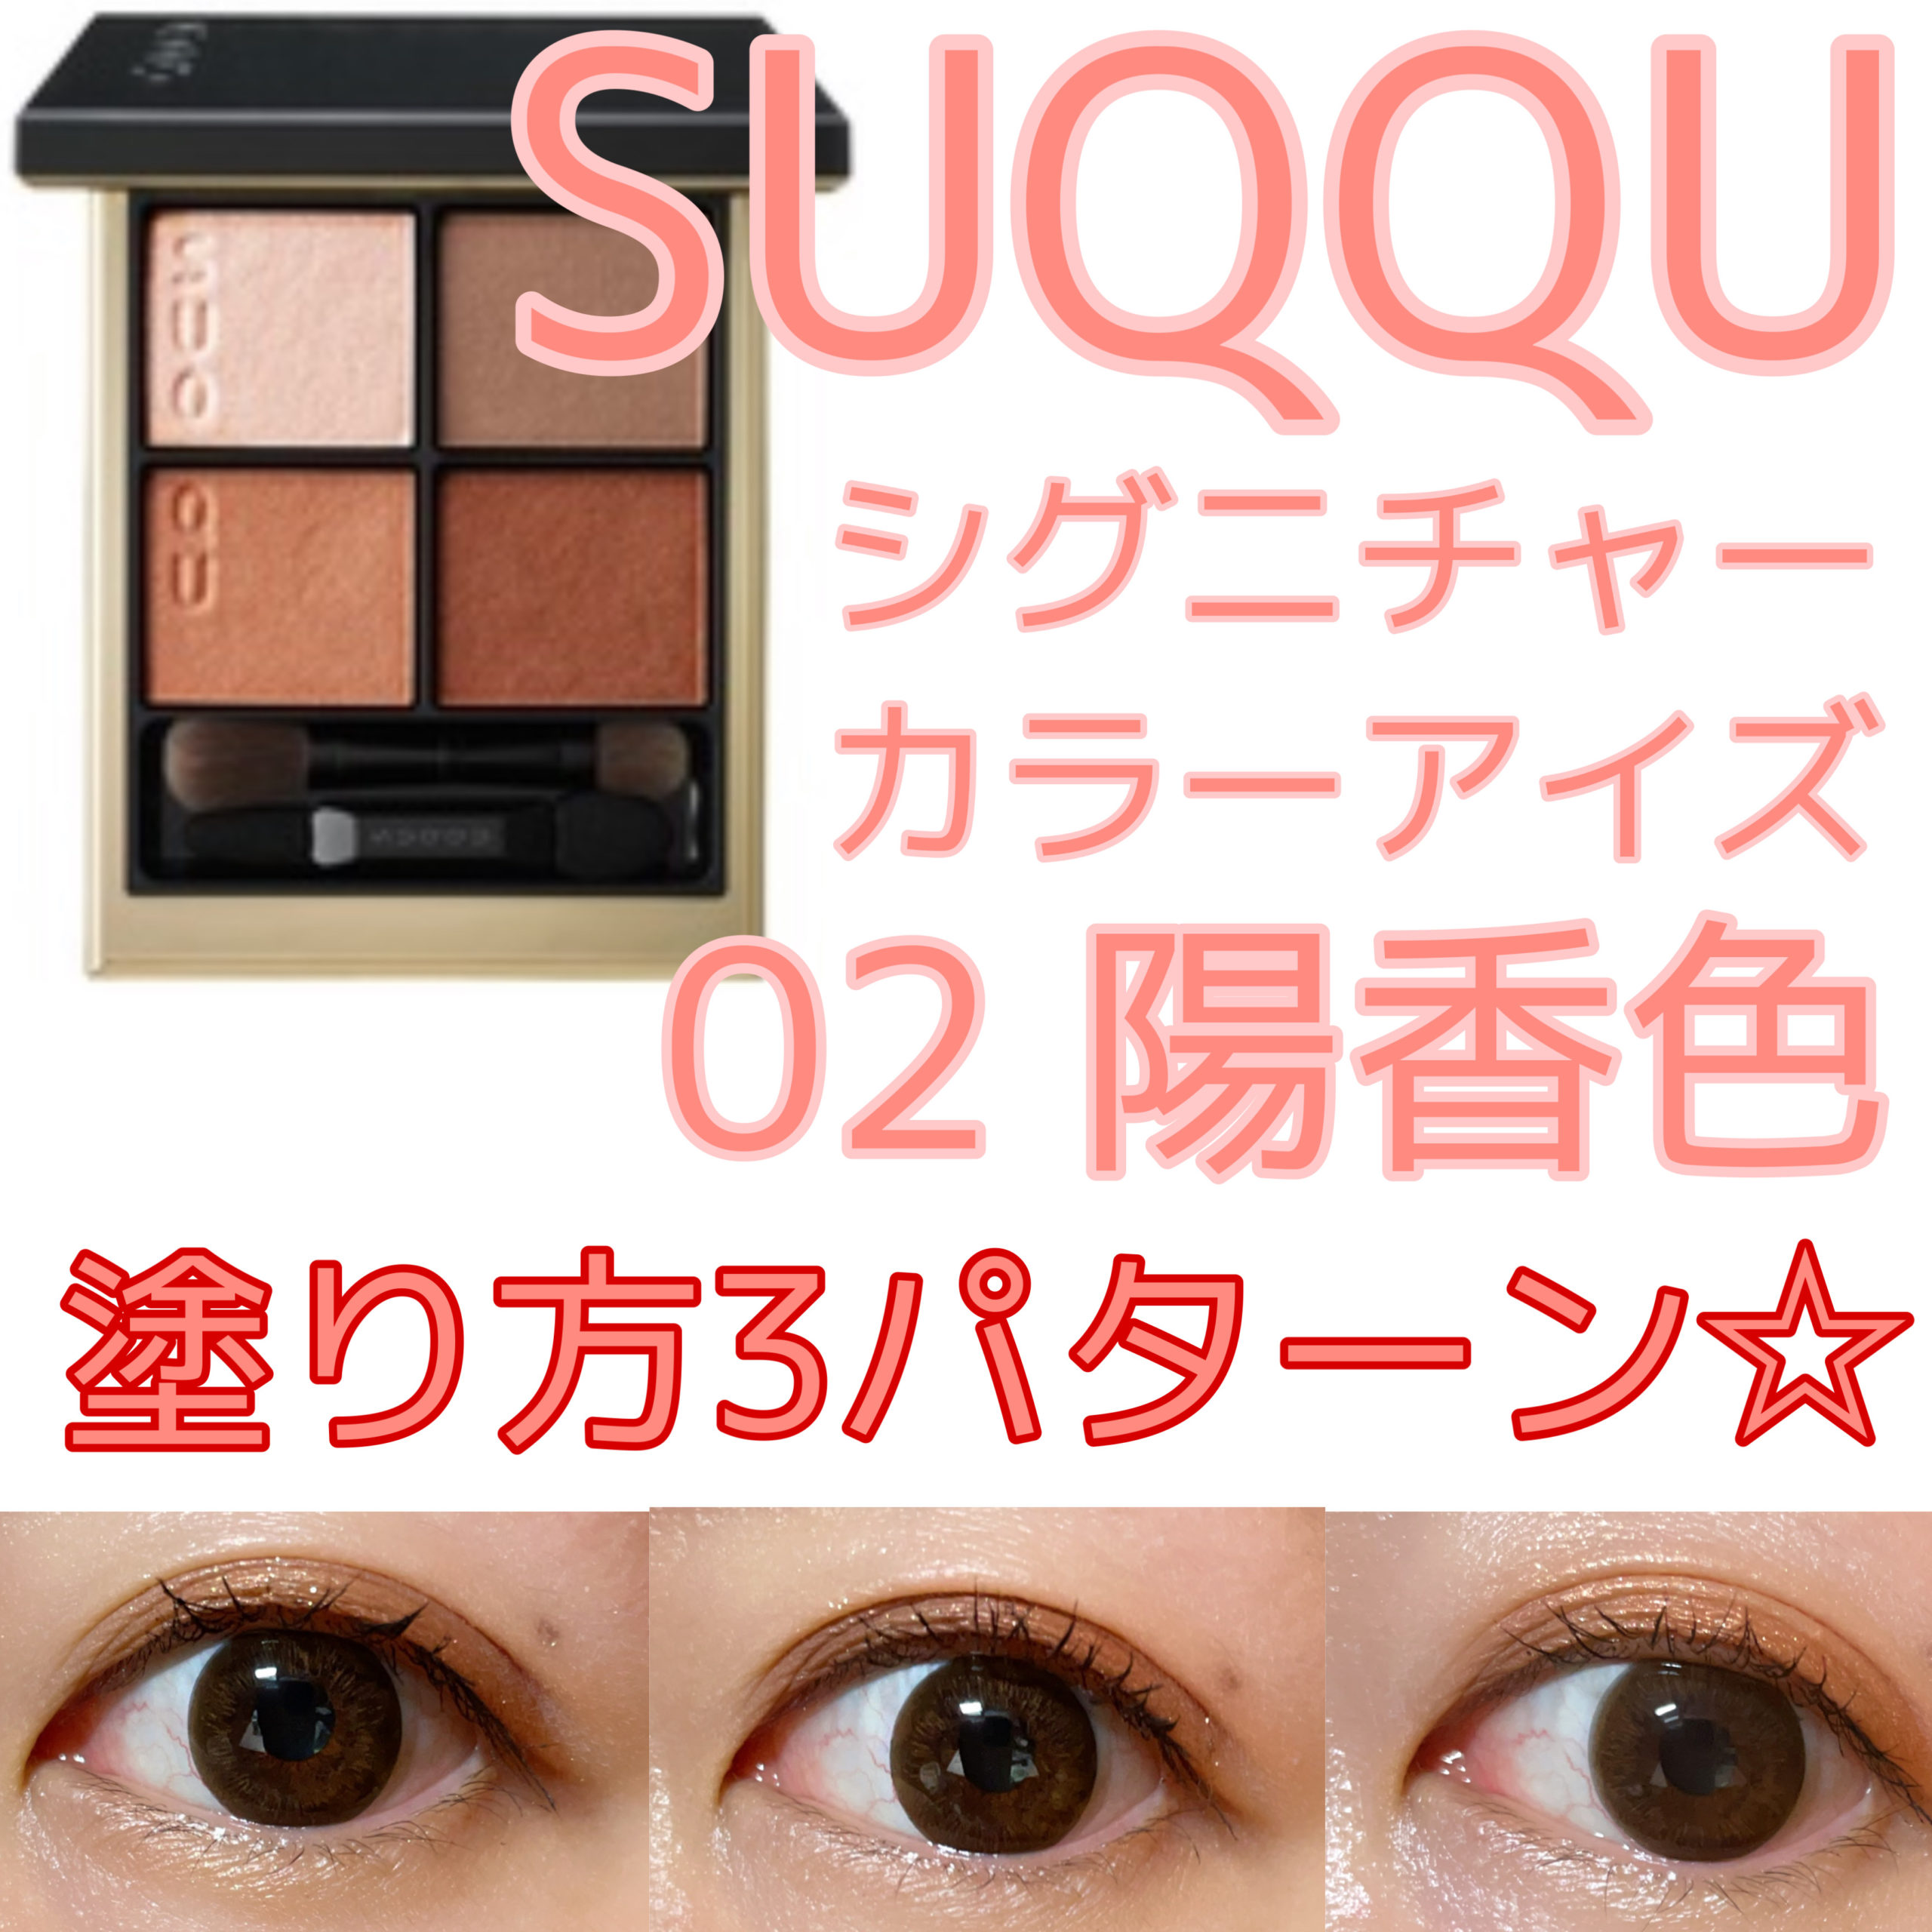 1560円 【ネット限定】 SUQQU シグニチャー カラー アイズ 02 陽香色